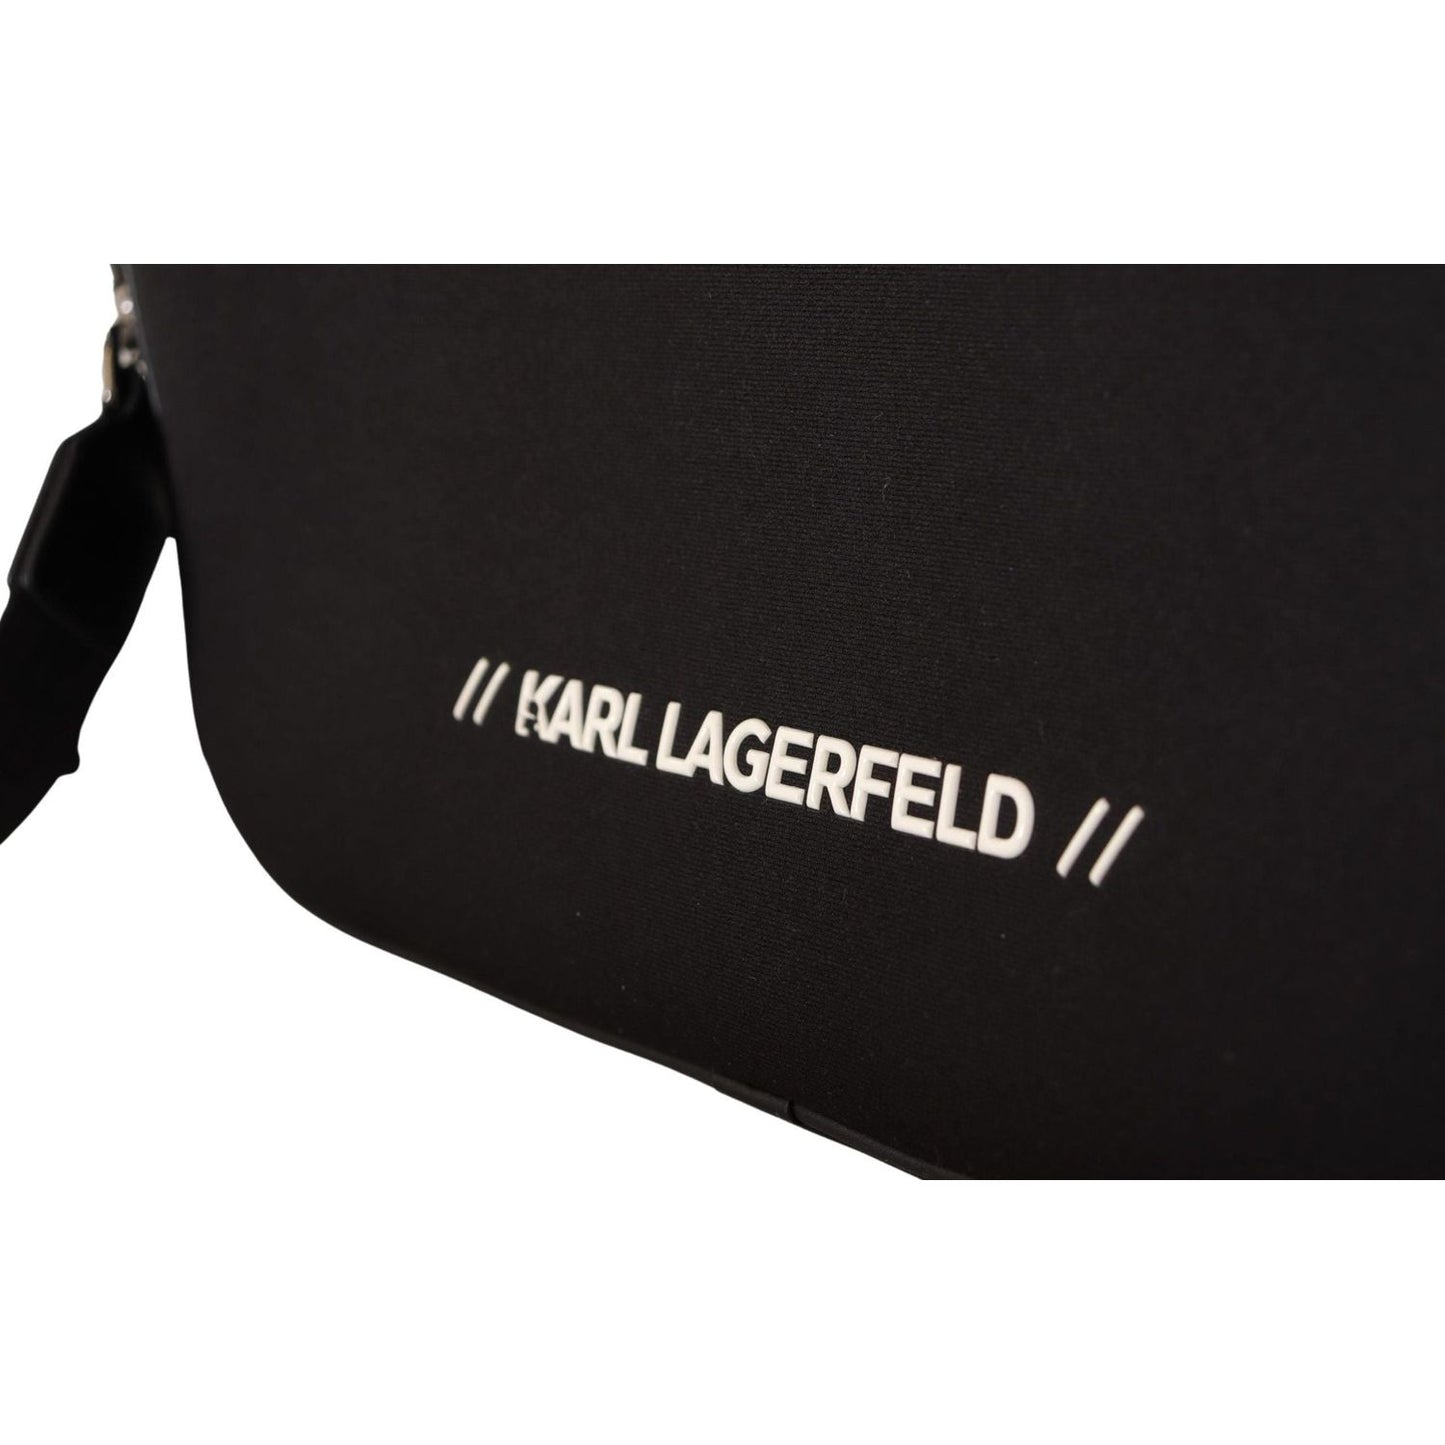 Karl Lagerfeld Sleek Nylon Laptop Crossbody Bag For Sophisticated Style black-nylon-laptop-crossbody-bag